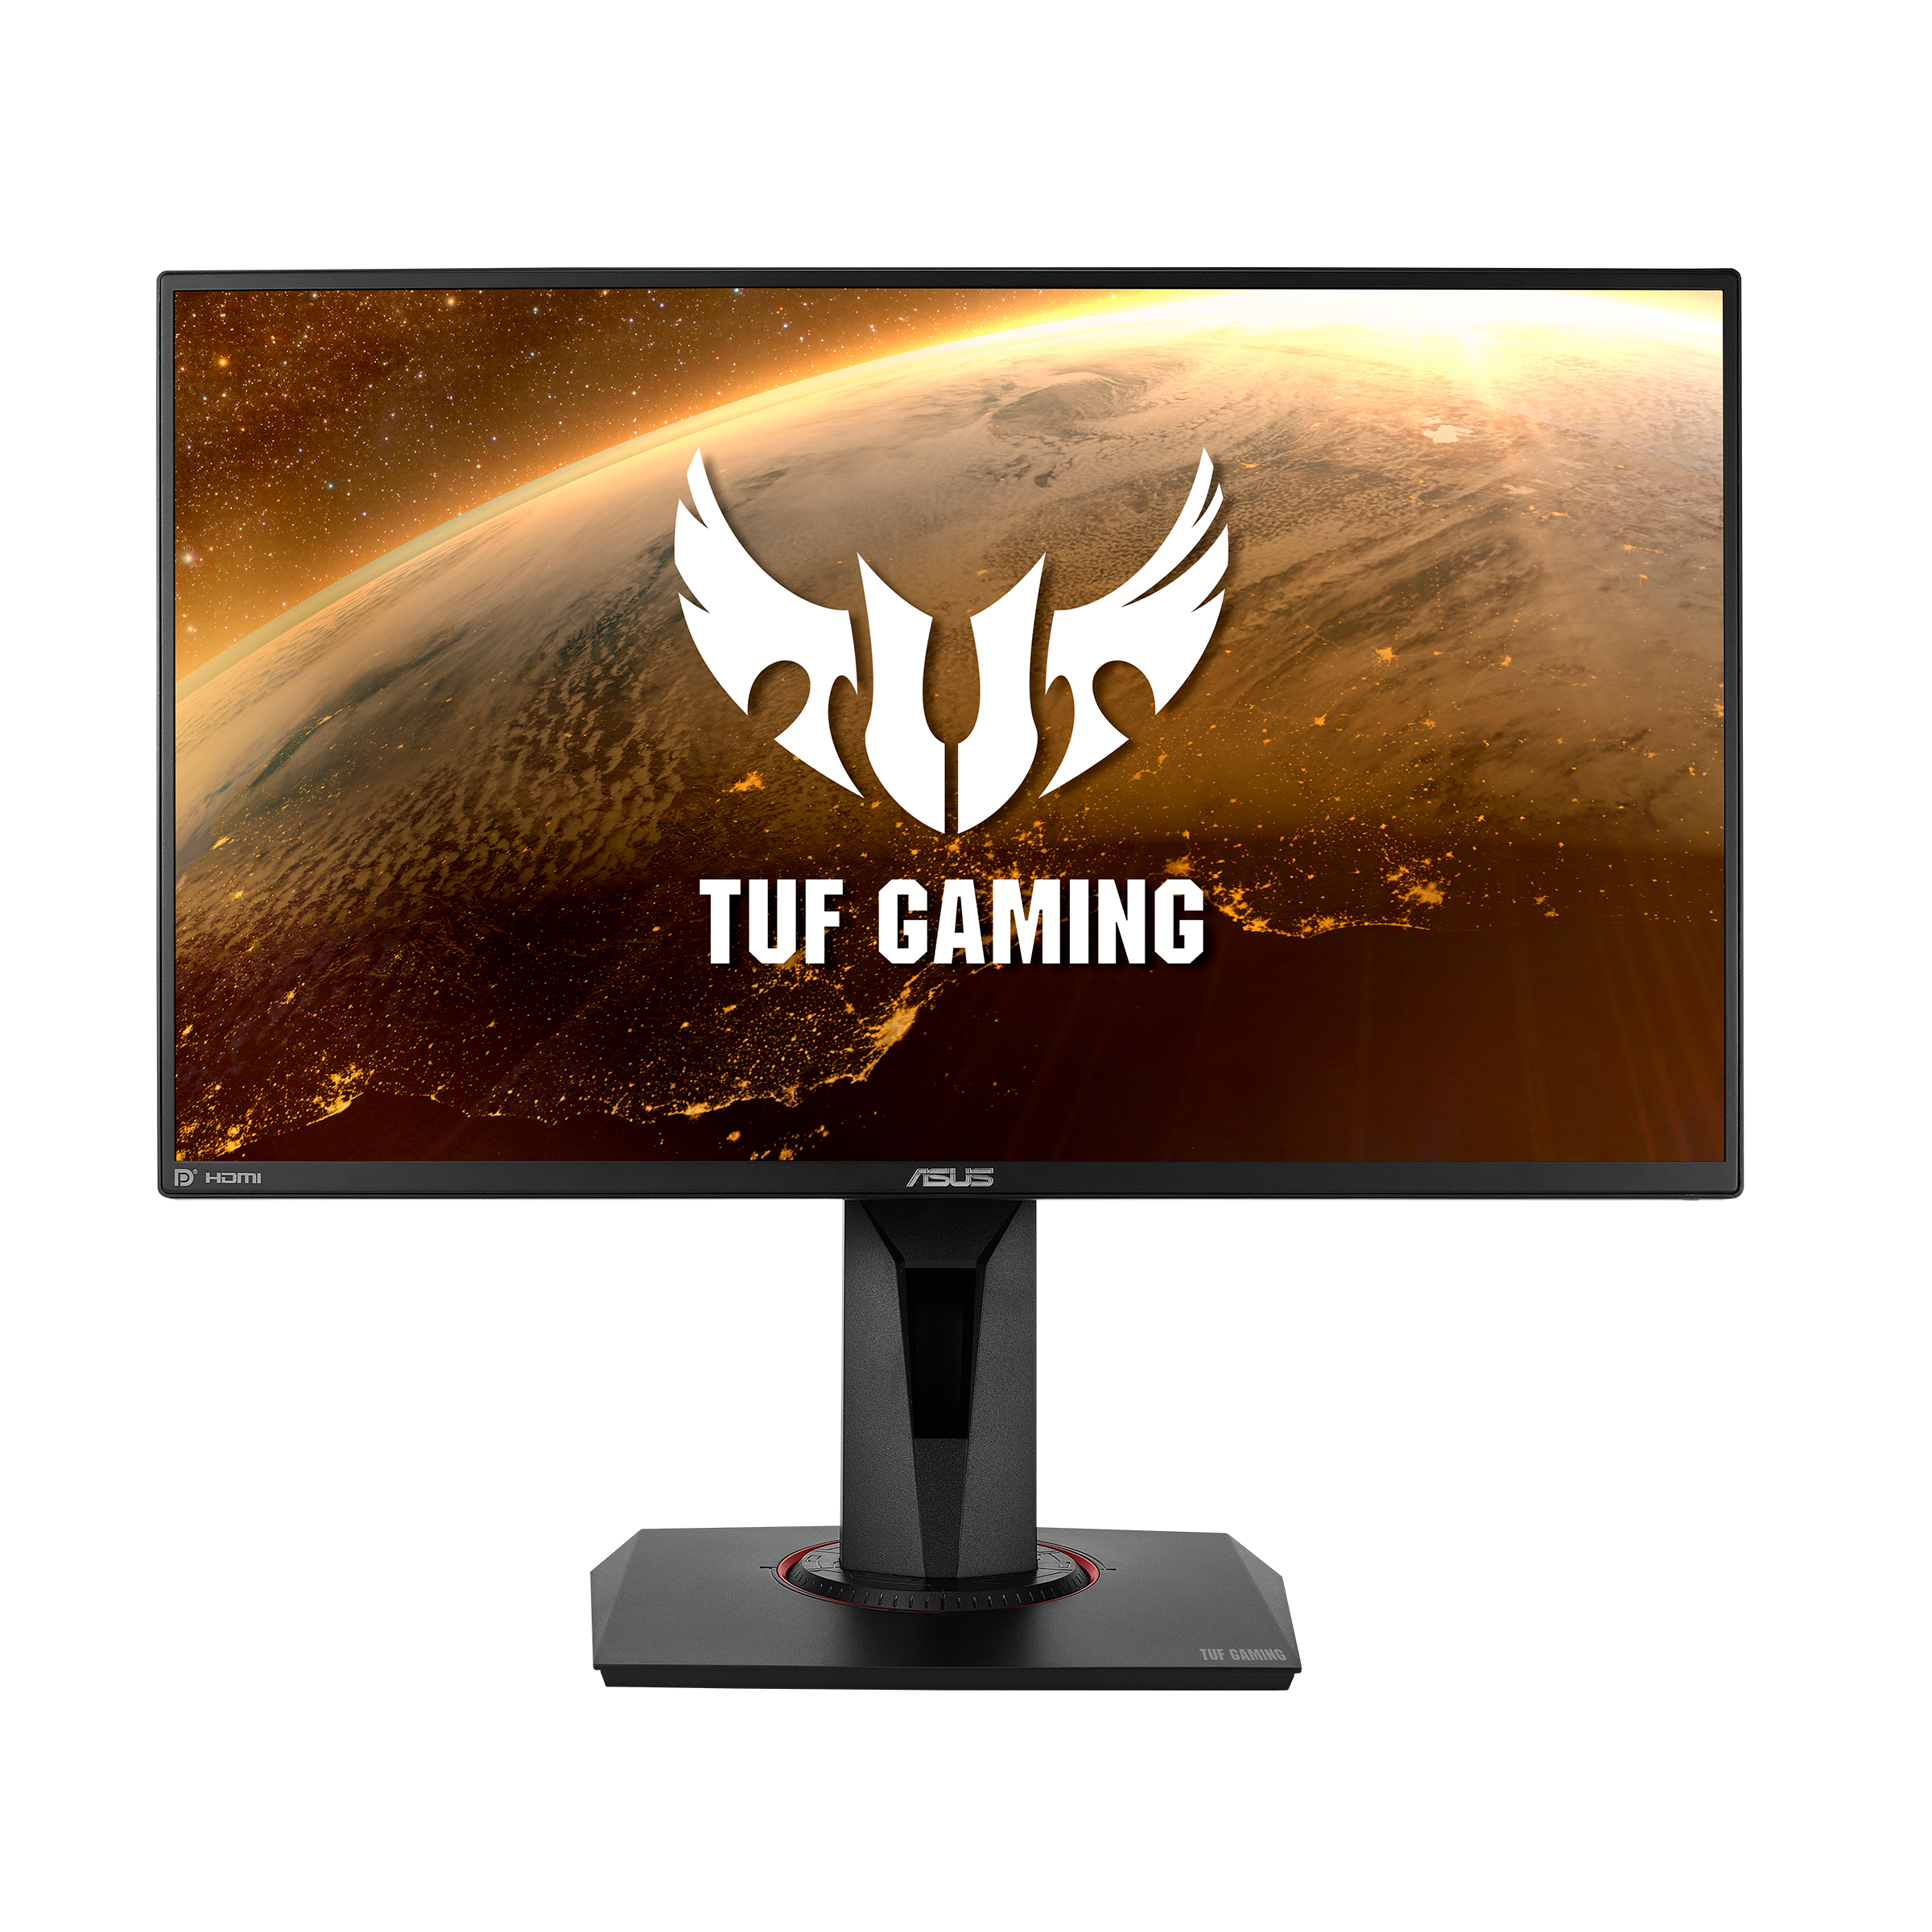 ASUS TUF Gaming VG259QR LED display